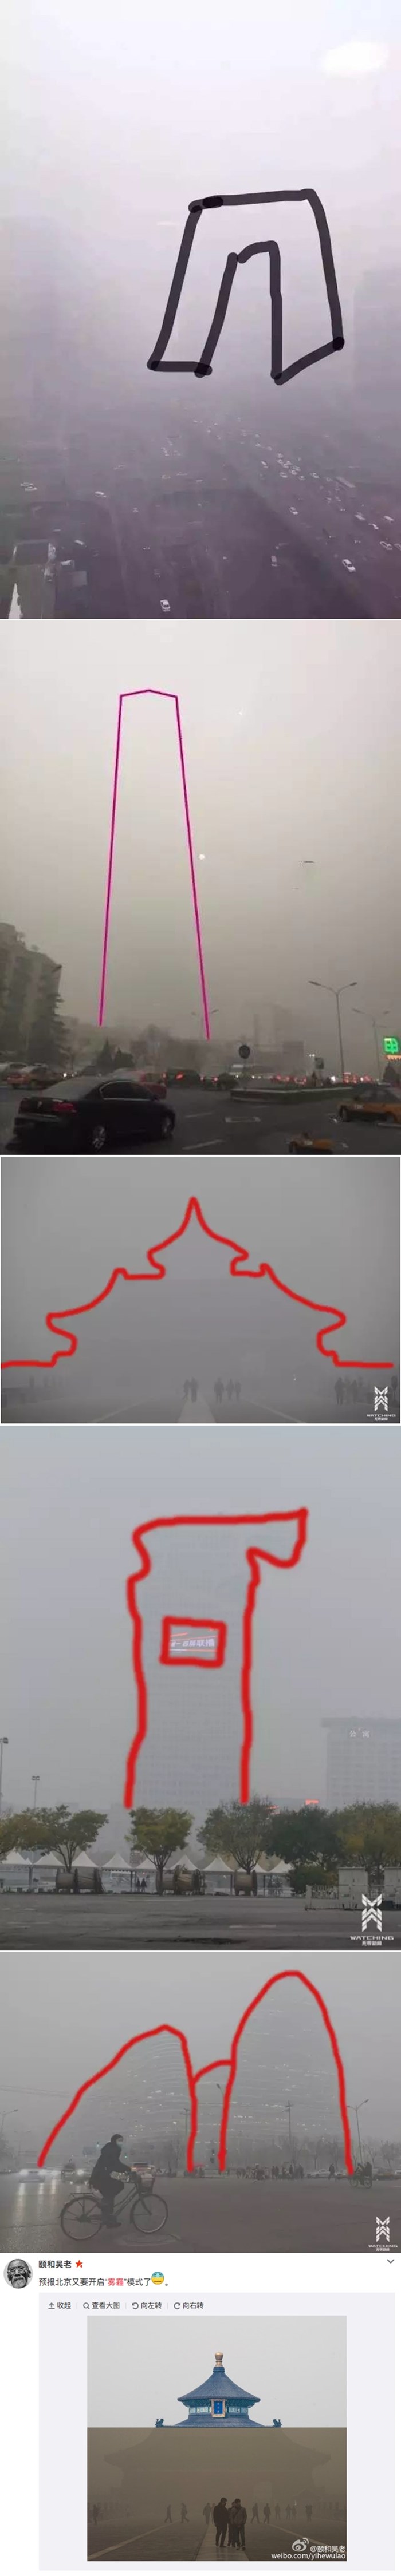 STRAVA U KINI: Stanovnici Pekinga ocrtavaju simbole grada u katastrofalnom smogu